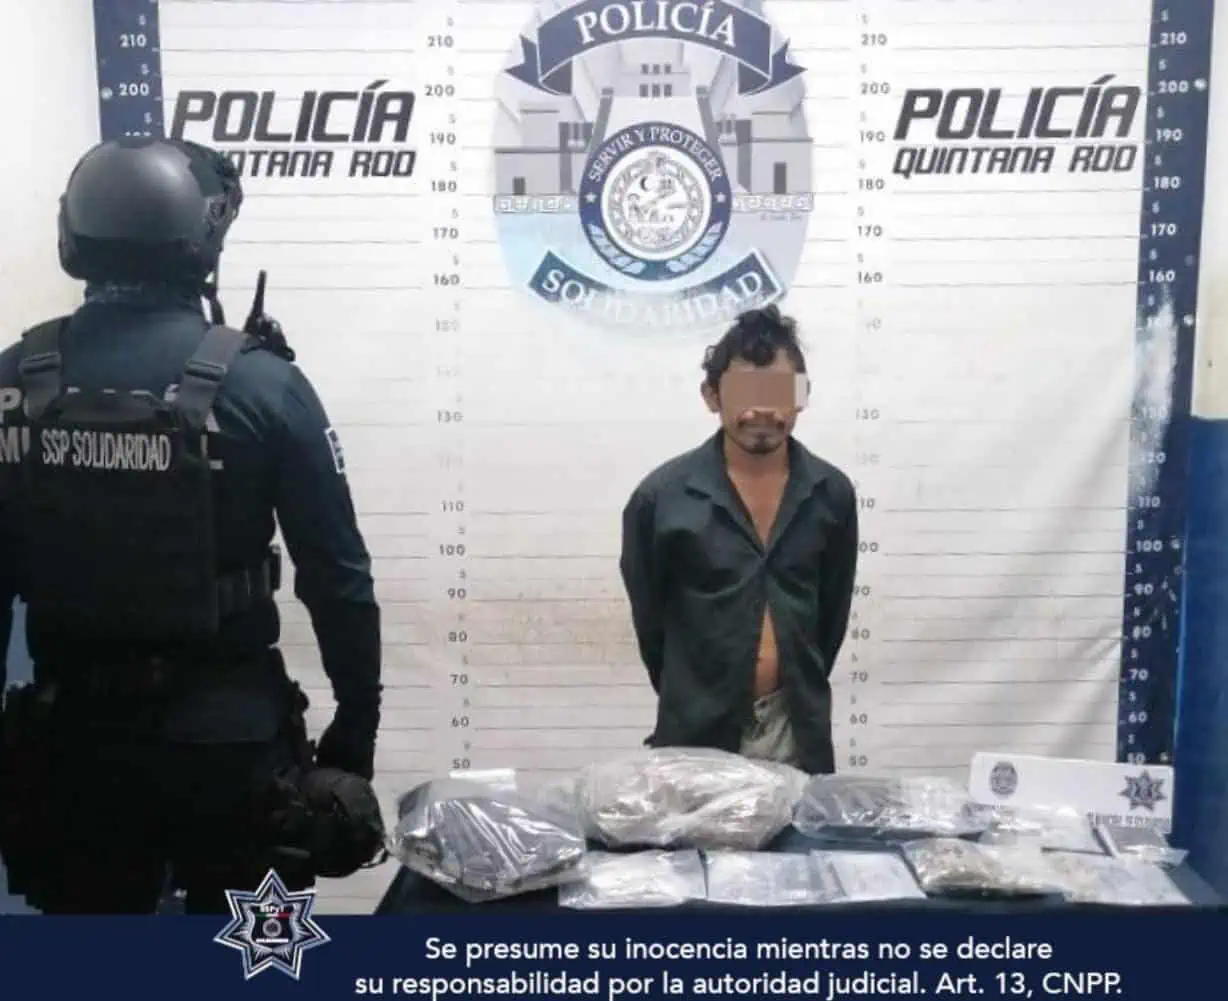 Policía de Solidaridad asegura más de 100 dosis de narcóticos